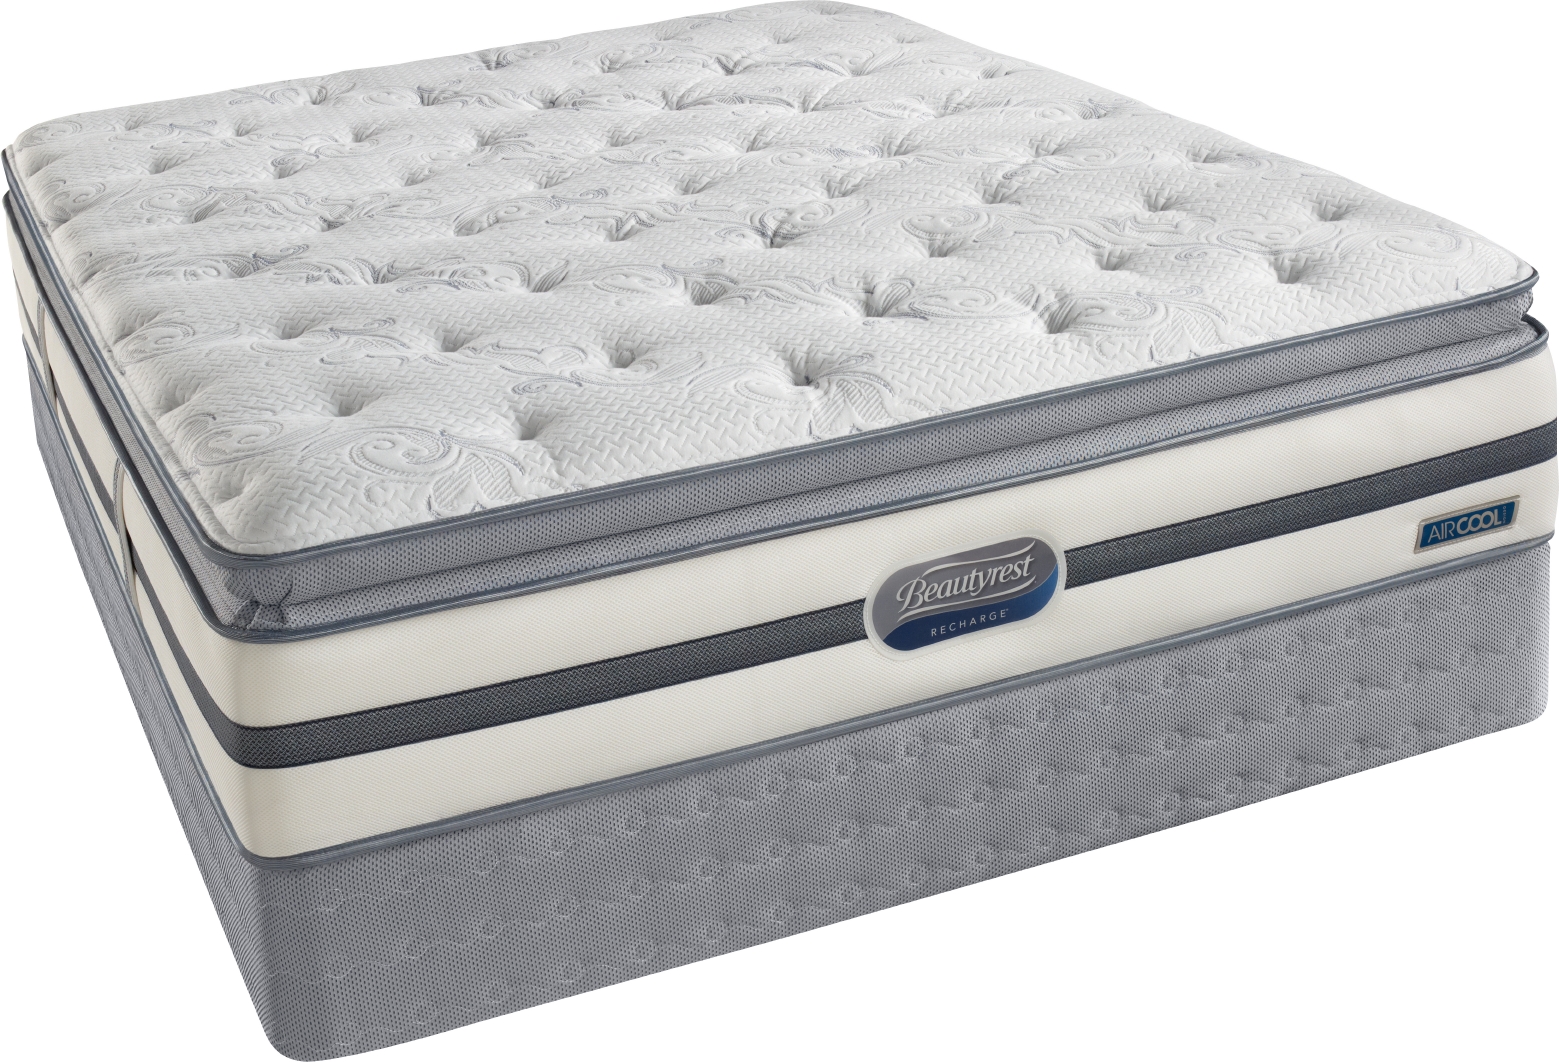 simmons beauty rest pillow top mattress